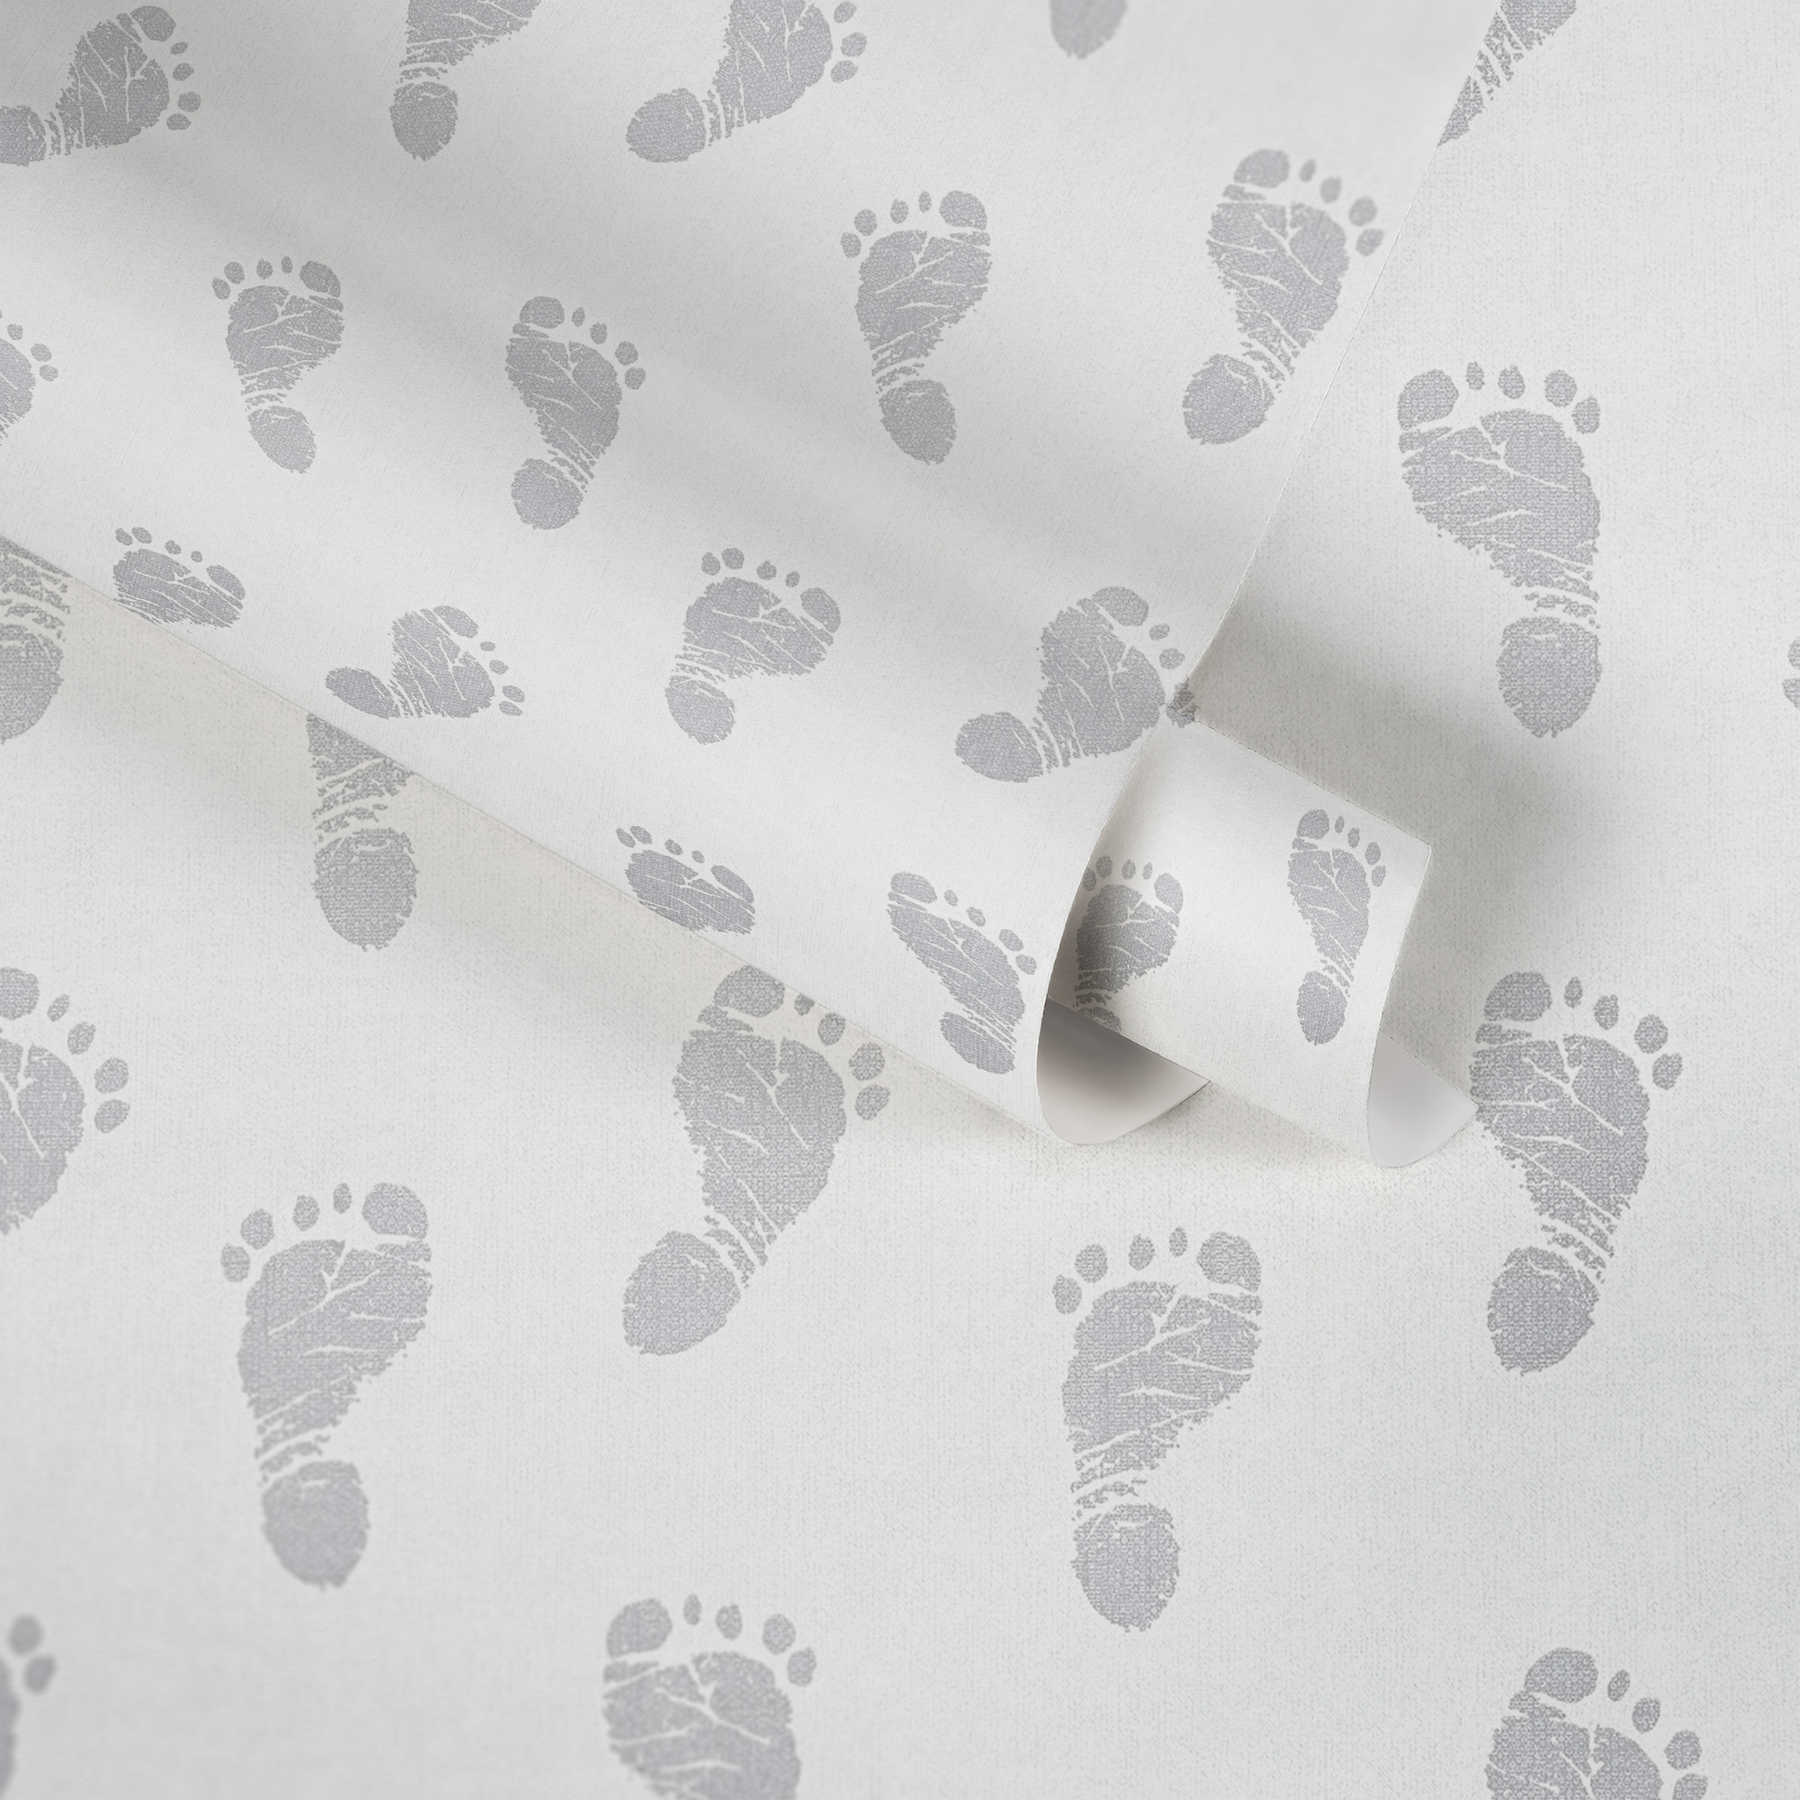             Baby Tapete mit Füßchen-Muster – Metallic, Weiß
        